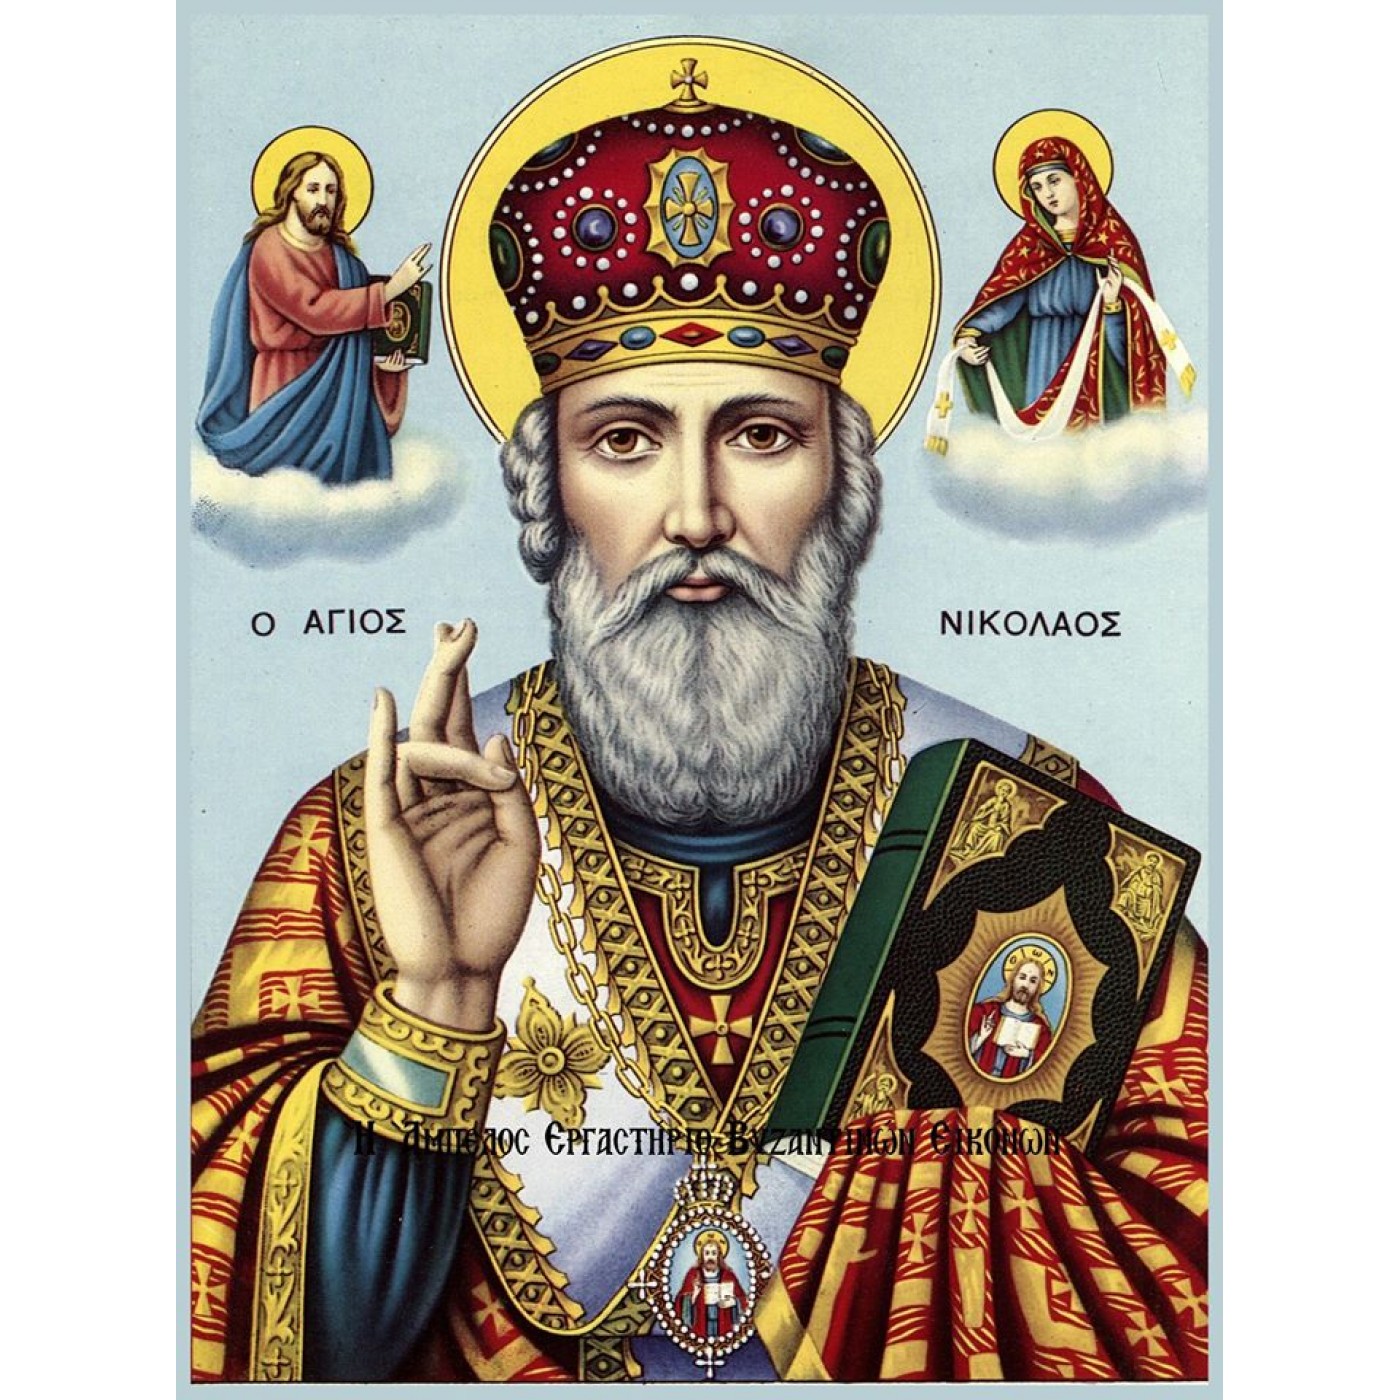 Ο Άγιος Νικόλαος (15 Μαρτίου 270 – 6 Δεκεμβρίου 343) είναι Έλληνας Μικρασιάτης άγιος της Ανατολικής Ορθόδοξης και της Ρωμαιοκαθολικής Εκκλησίας. Ήταν επίσκοπος στα Μύρα της Λυκίας (Μικρά Ασία), γι' αυτό και αναφέρεται και ως Νικόλαος Μύρων, ενώ στη Δύση αναφέρεται και ως Νικόλαος του Μπάρι, καθώς στο Μπάρι βρίσκονται τα λείψανά του.